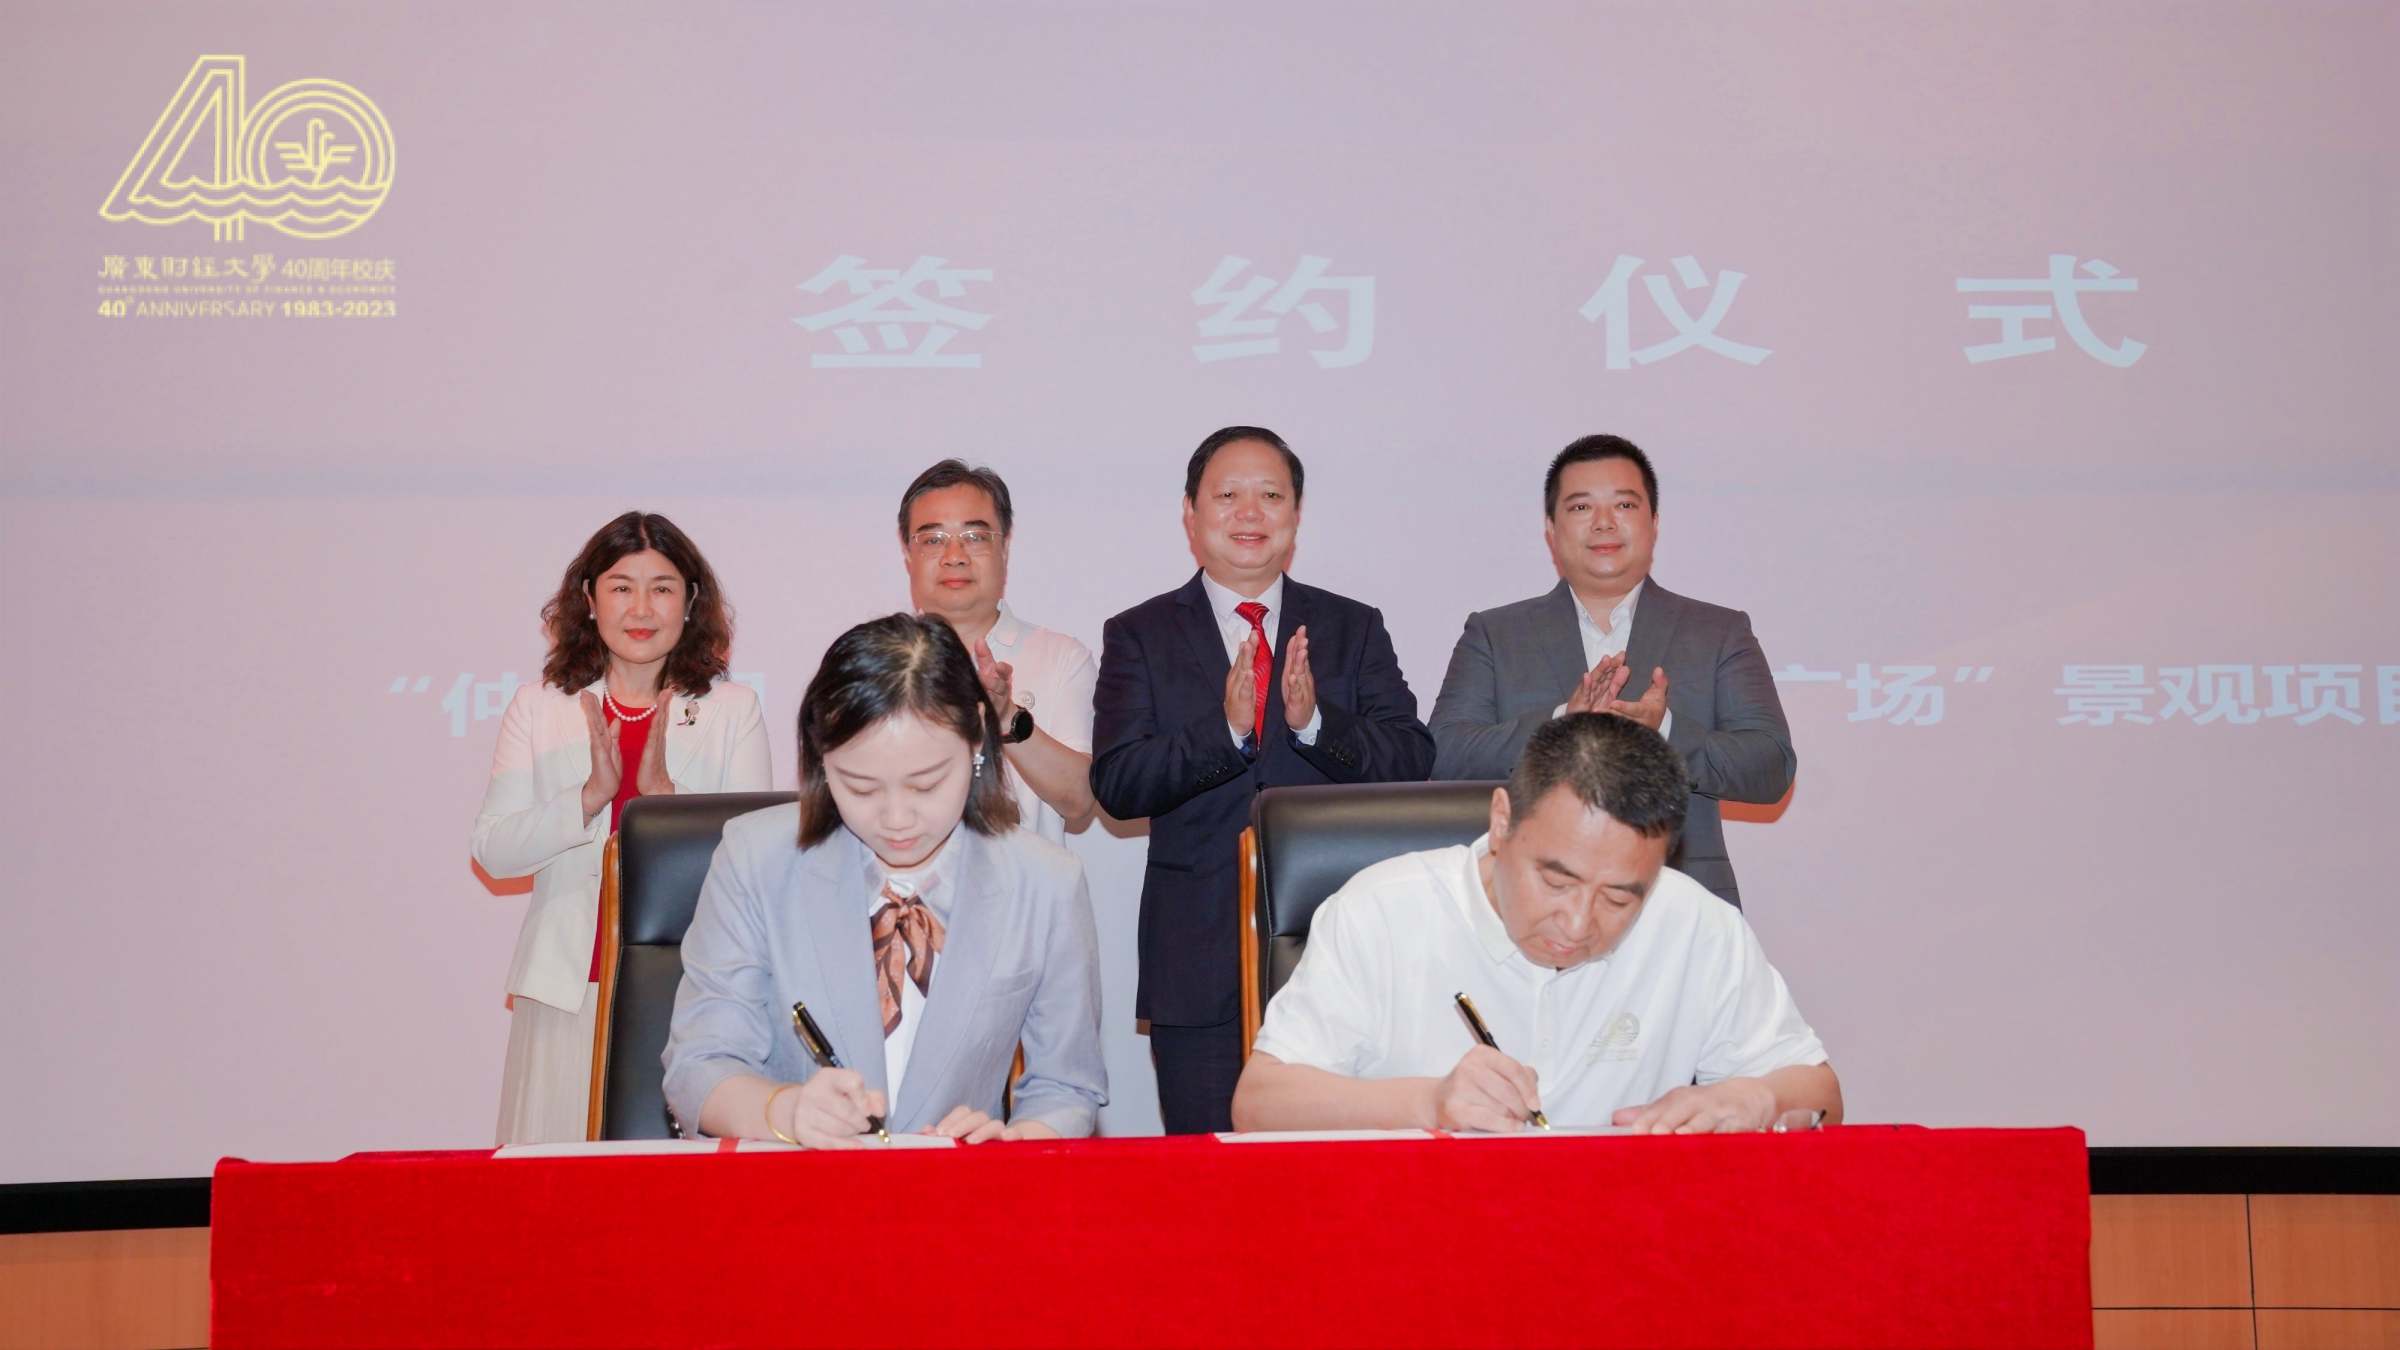 广东万成建设集团有限公司副总经理邓涛和我校教育发展基金会理事长陈光团签约。